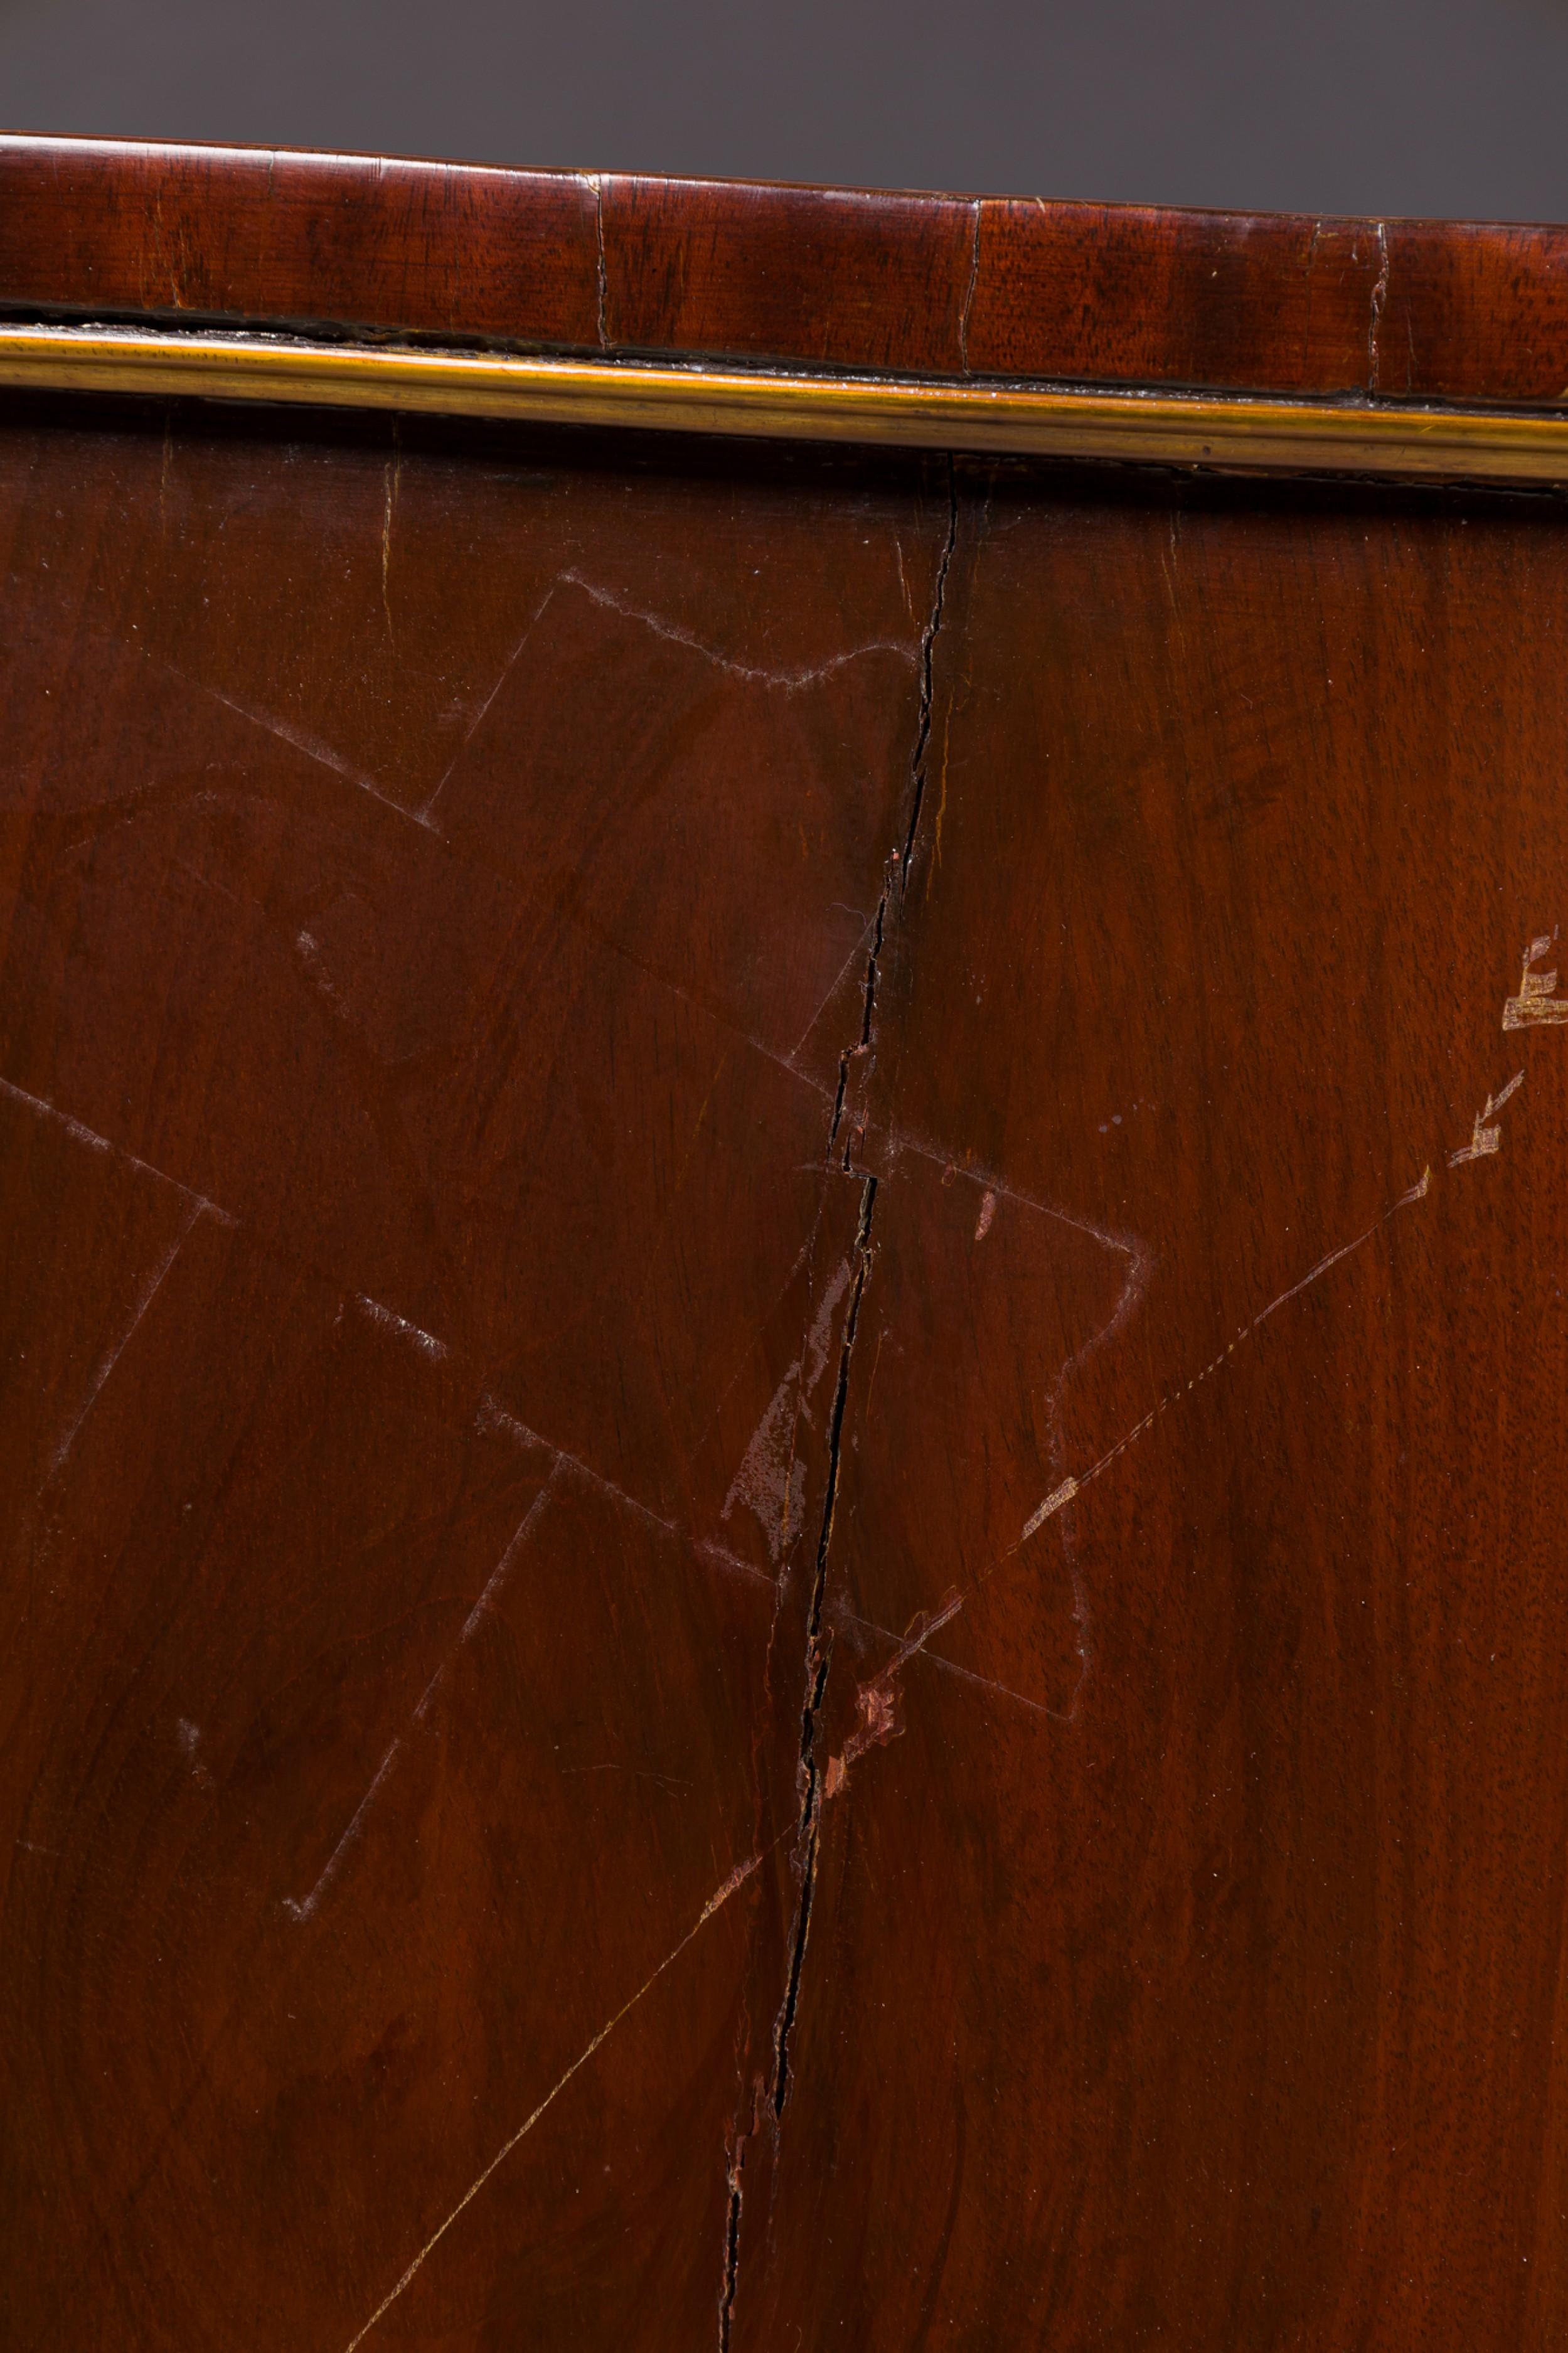 Russische Mahagoni-Credenza im neoklassischen Stil mit Messingbeschlägen, abgeschrägten Ecken und zwei oberen Schubladen, die ein Rautenmuster aus Holz und Messing aufweisen, das zwei kleine Schubladengriffe über zwei Schranktüren zentriert.
 

